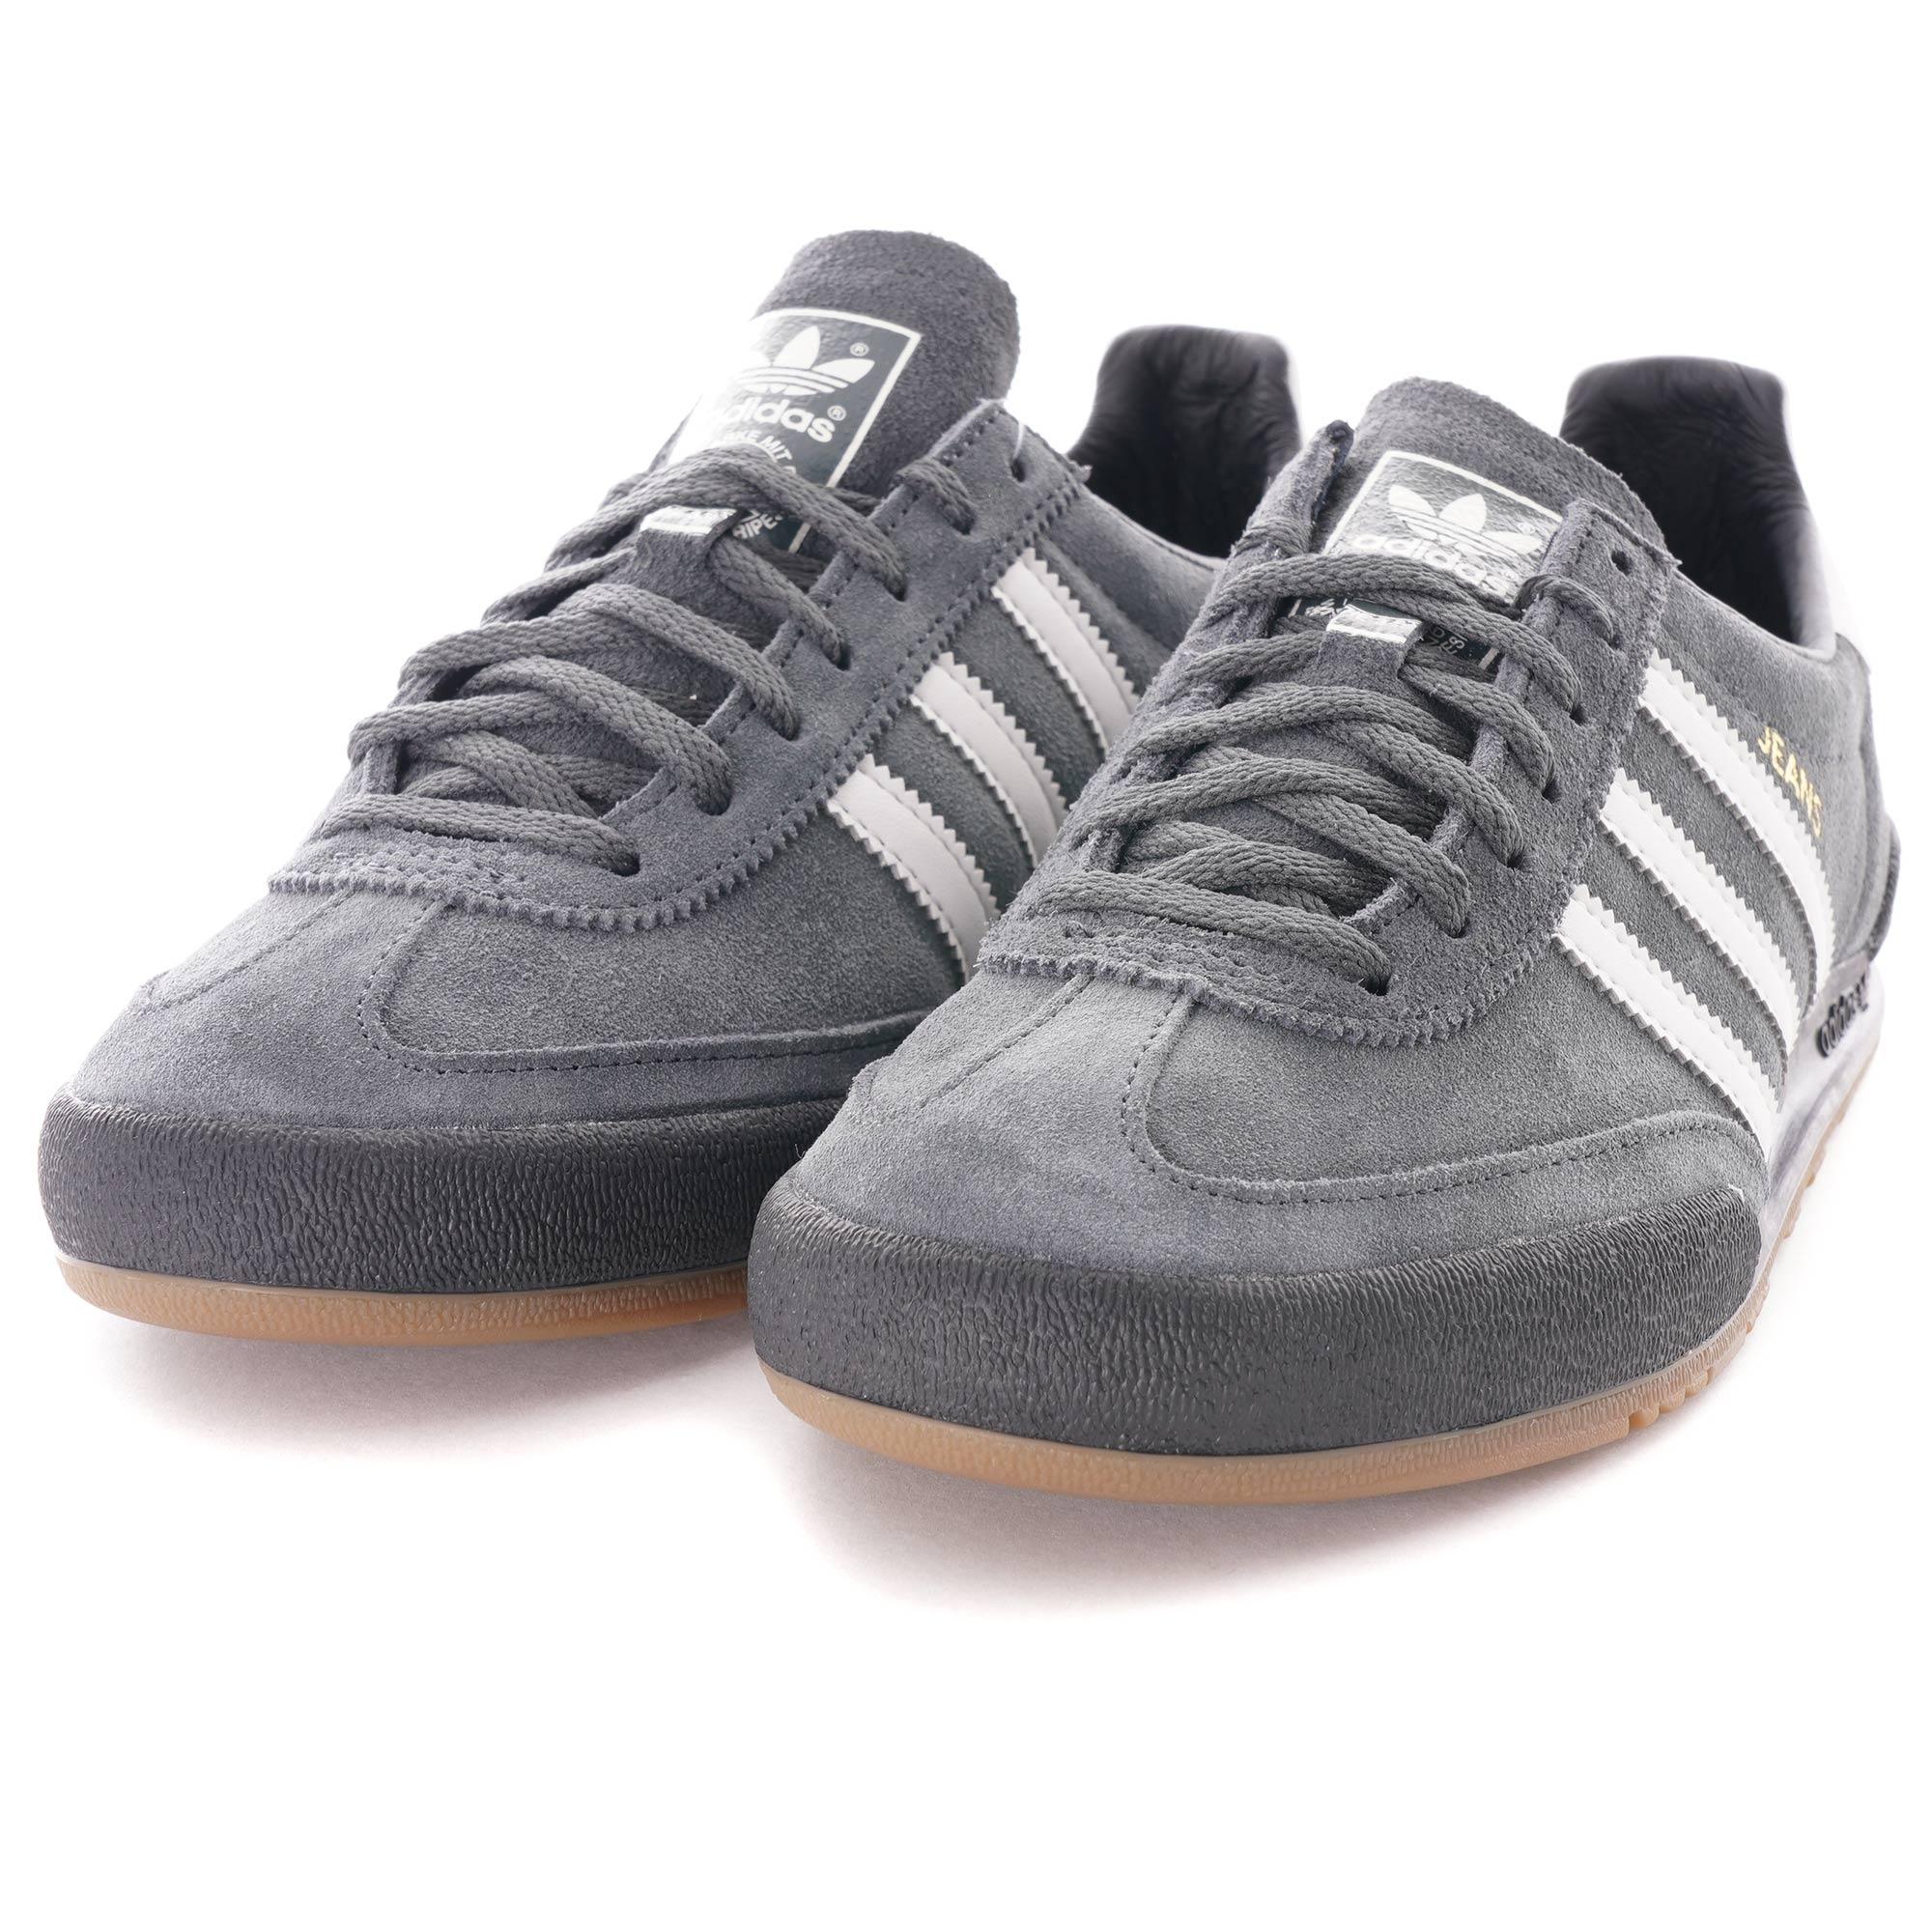 Adidas Jeans Trainers Rare Dk Grey | elcalecho.com